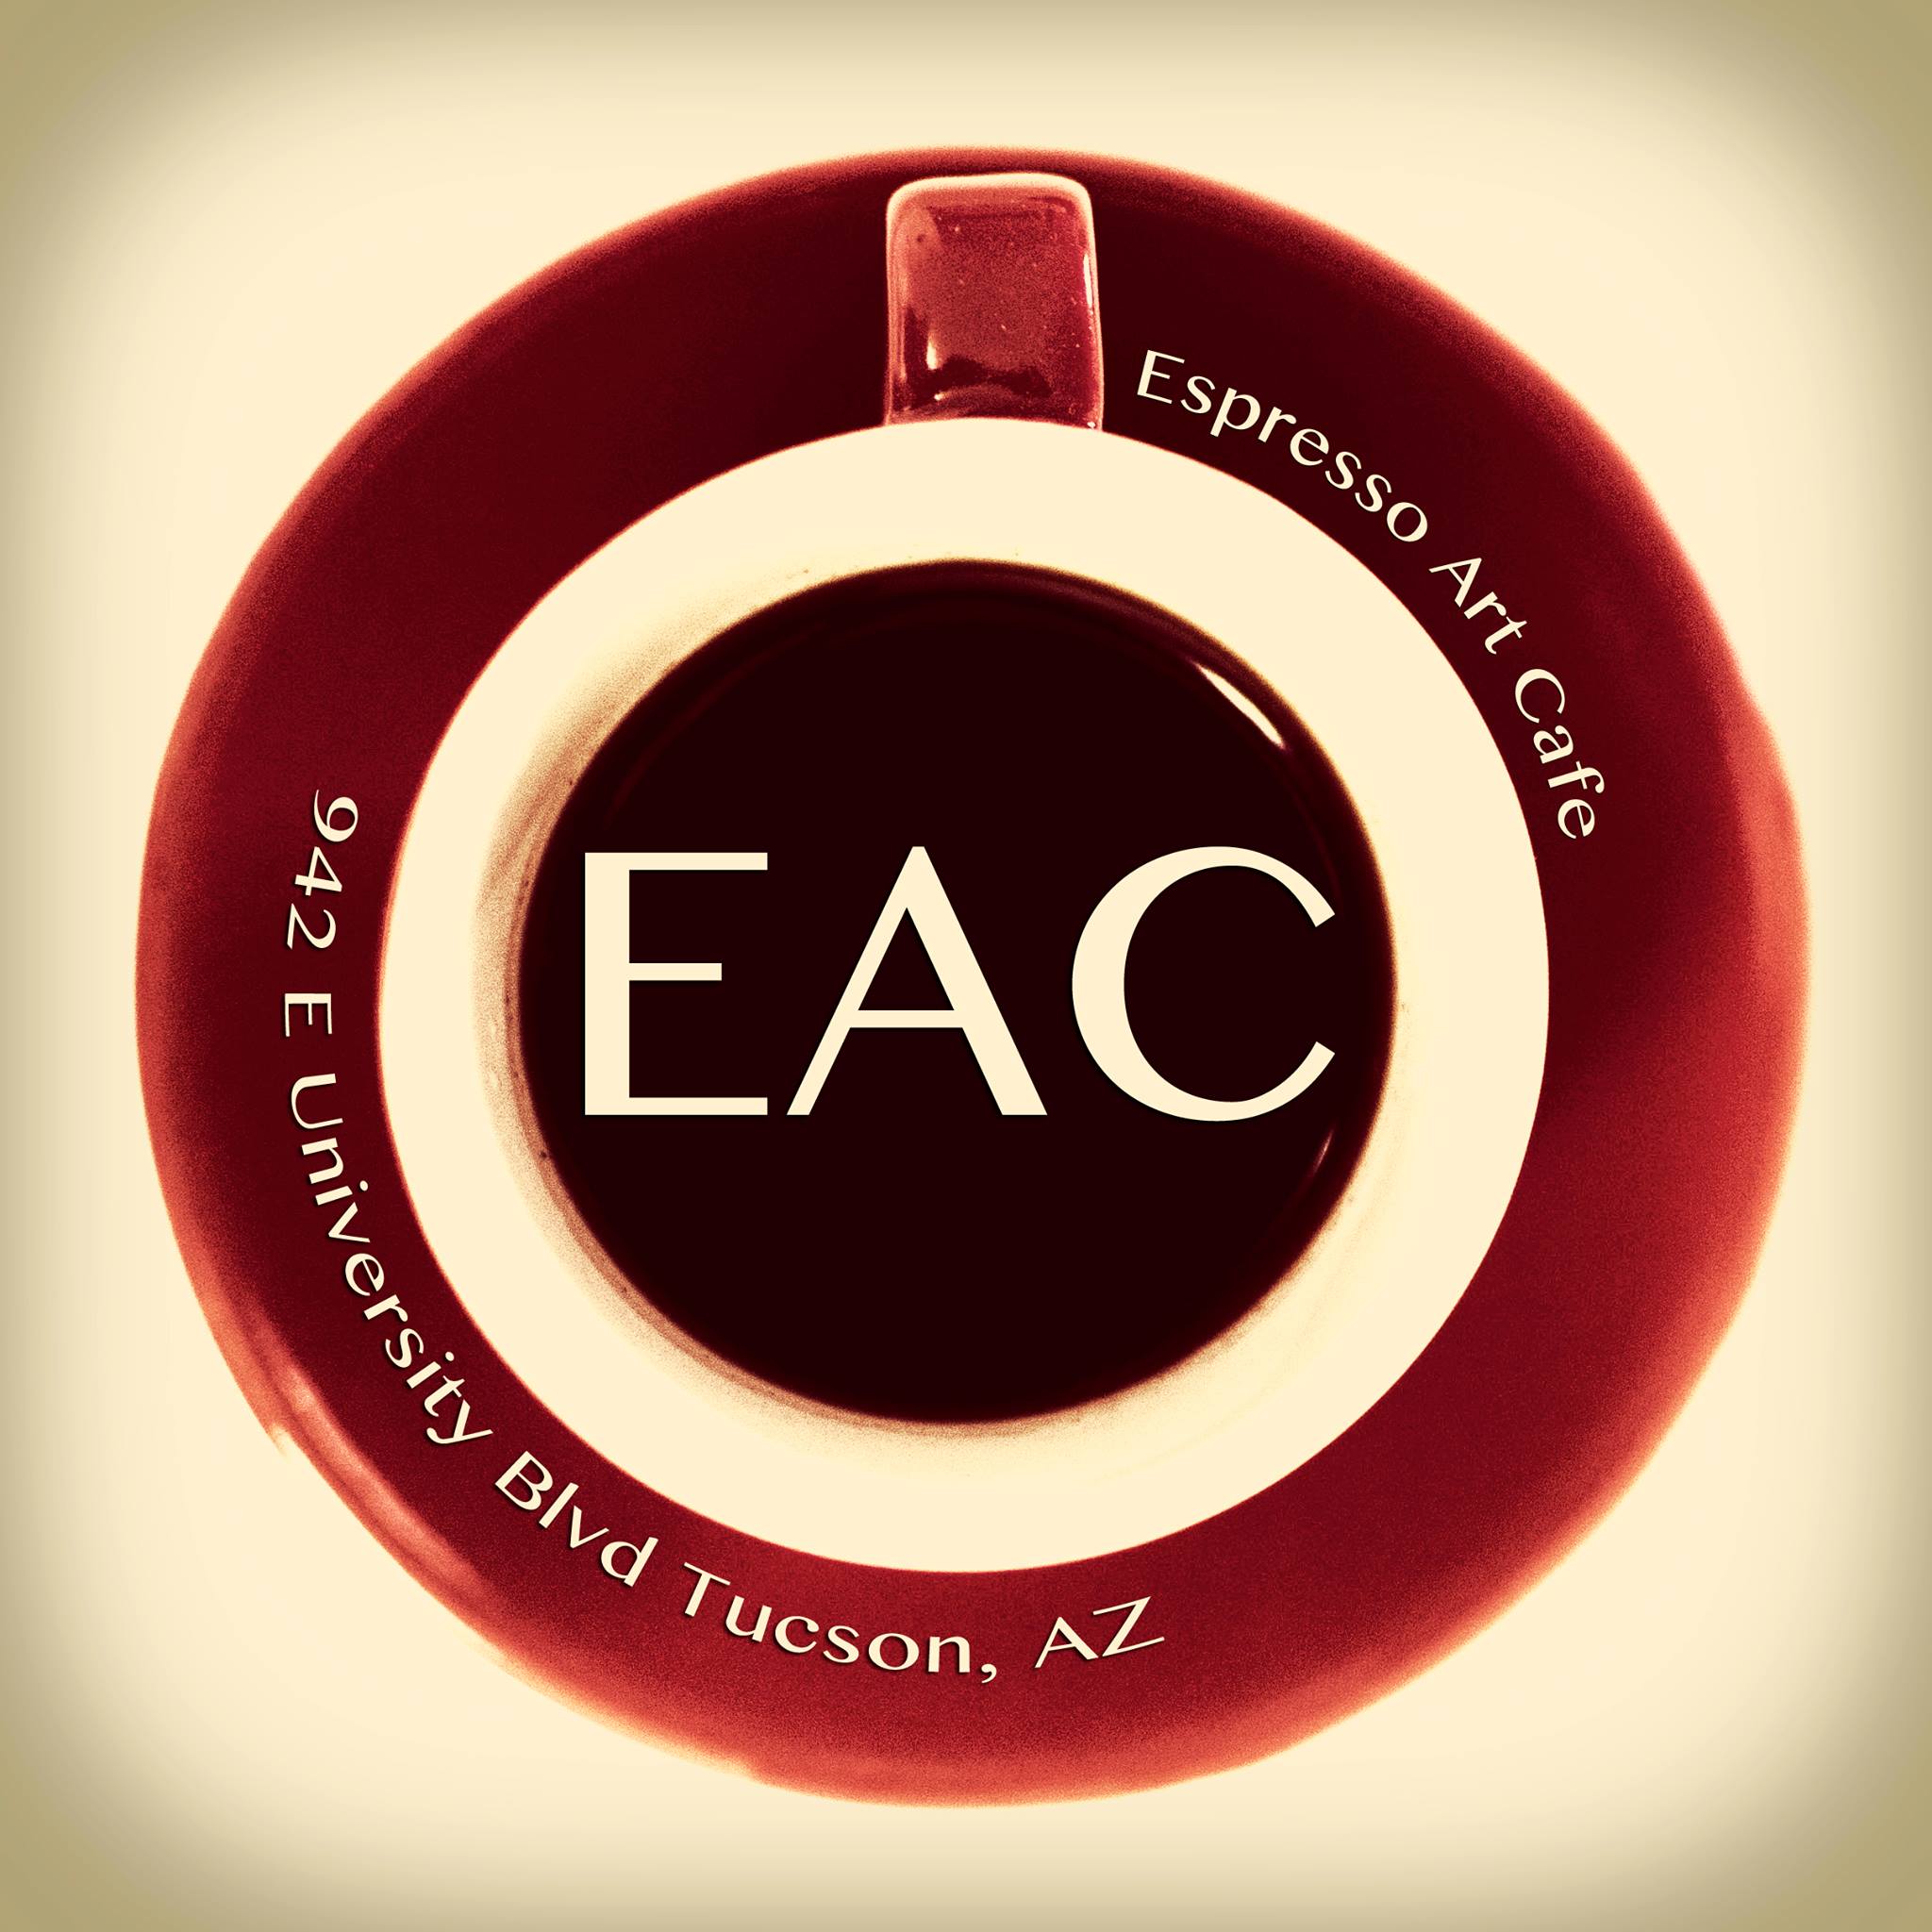 Company logo of Espresso Art Cafe